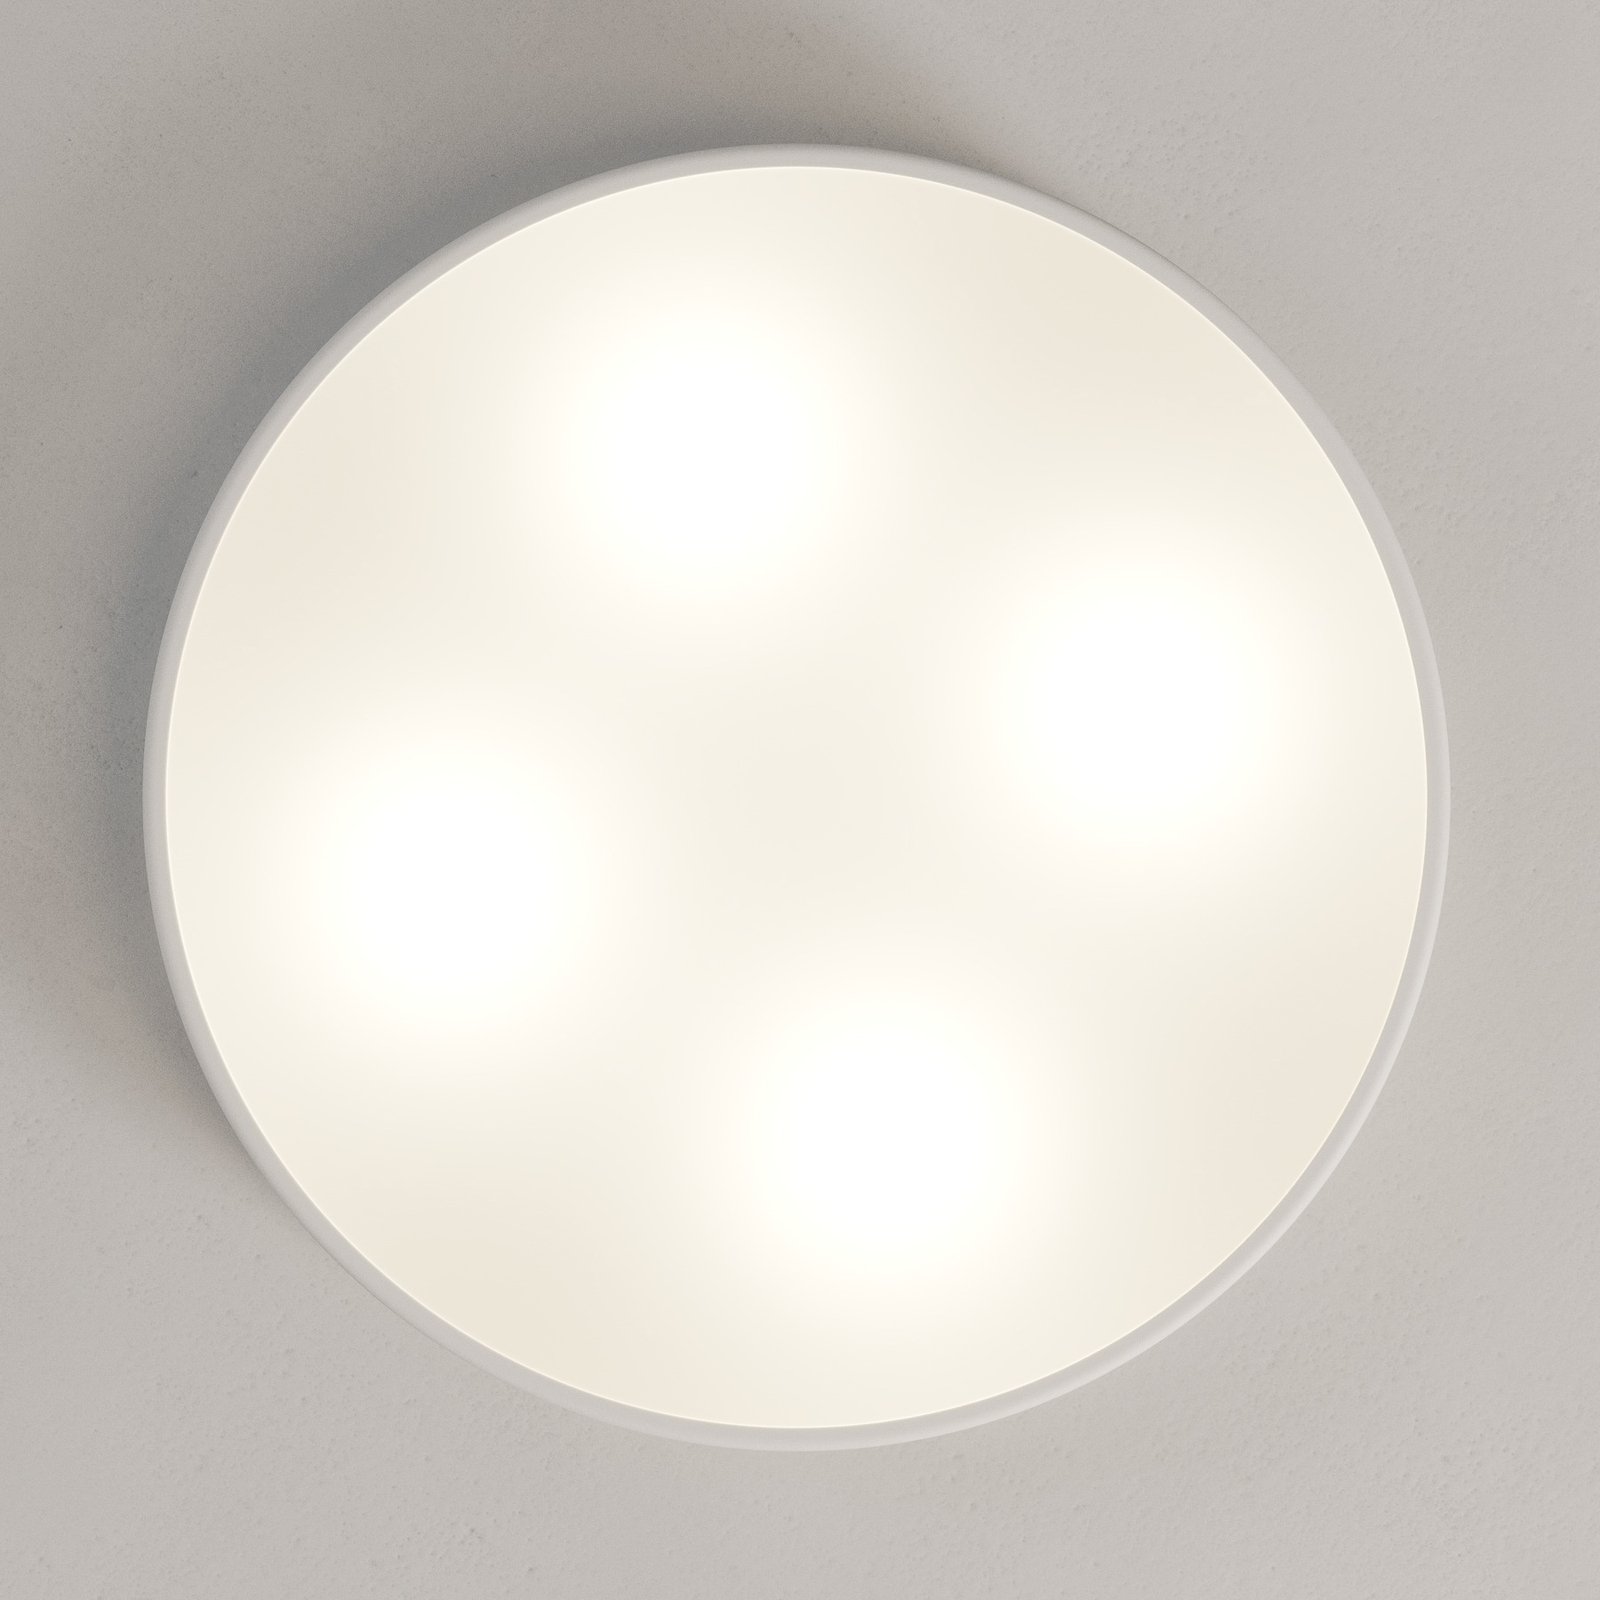 Cleo ceiling light, Ø 50 cm, white